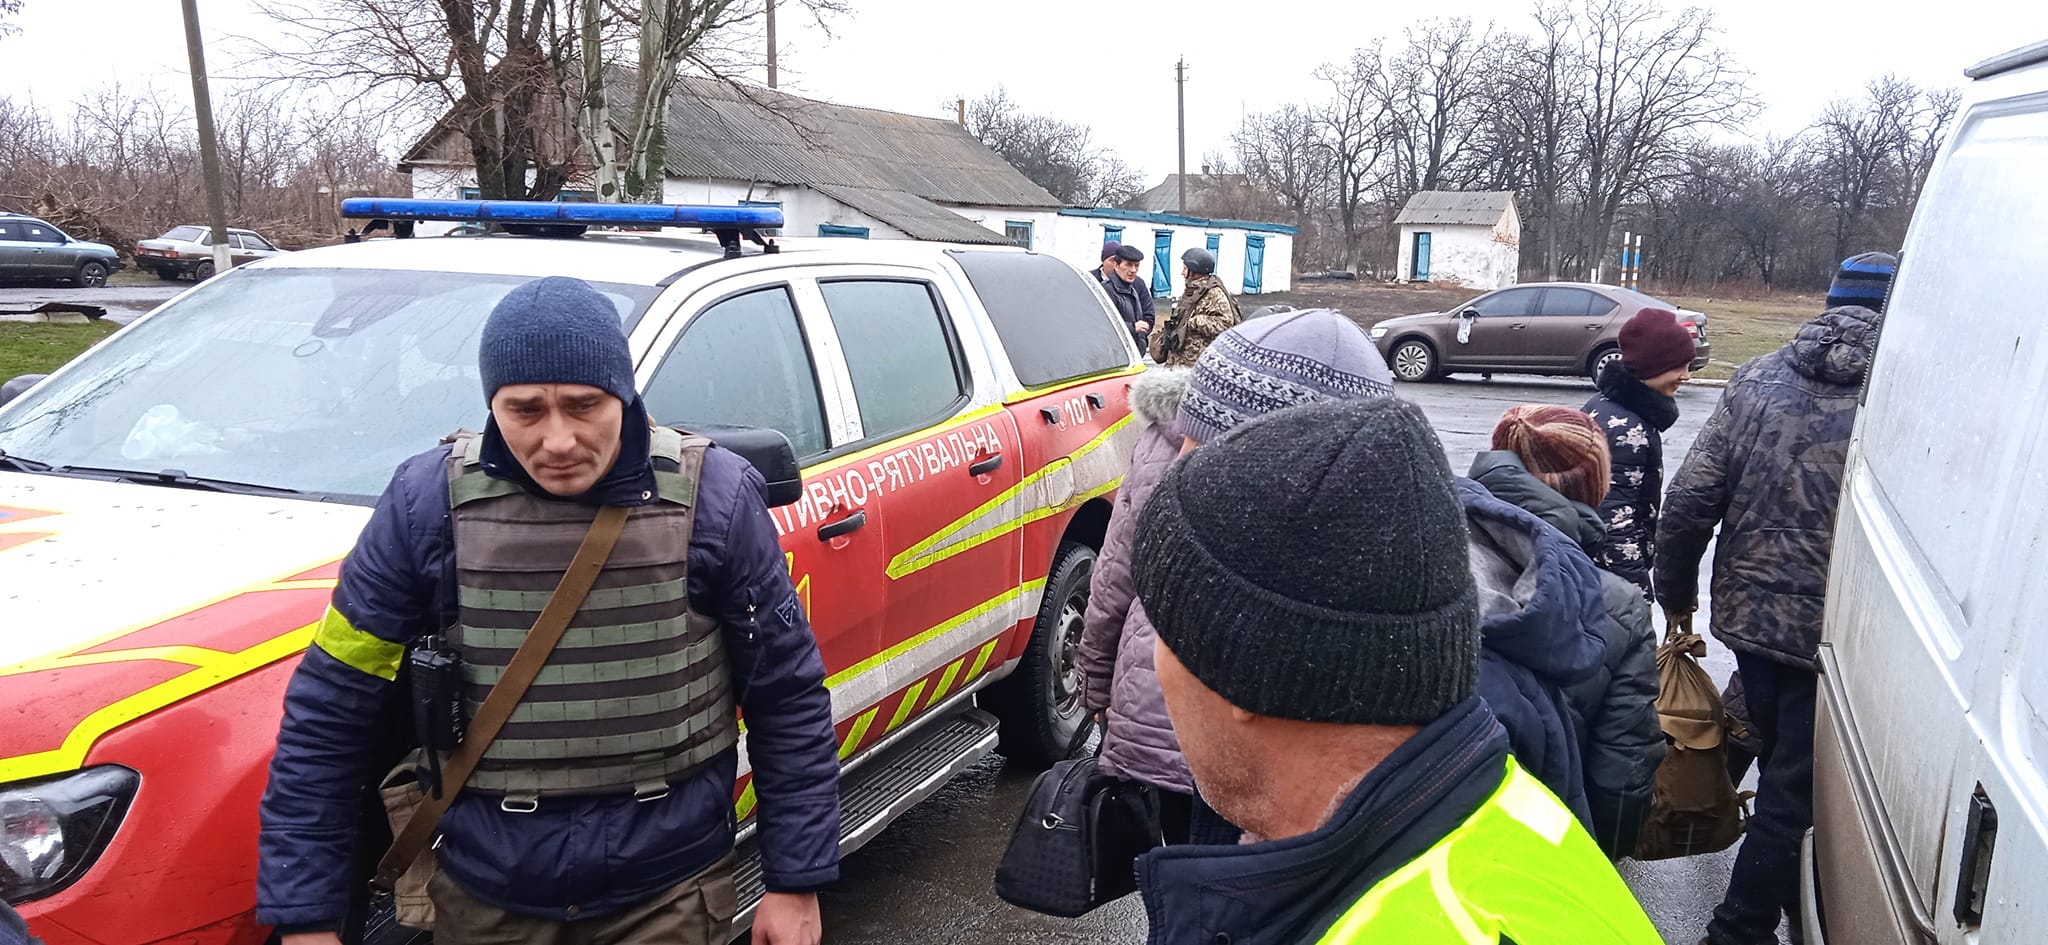 Ще близько 100 людей вдалося евакуювати з Волновахи, де не вщухають обстріли з артилерії (імена) 9